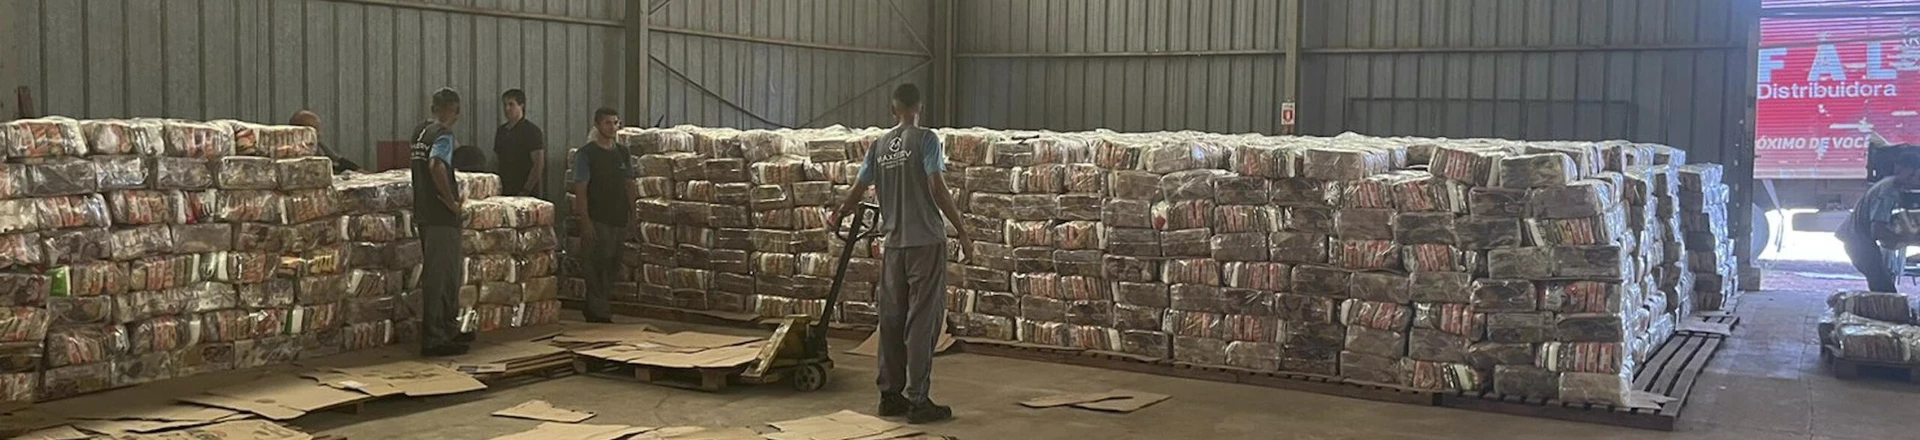 Cestas de alimentos armazenados em galpão em Roraima